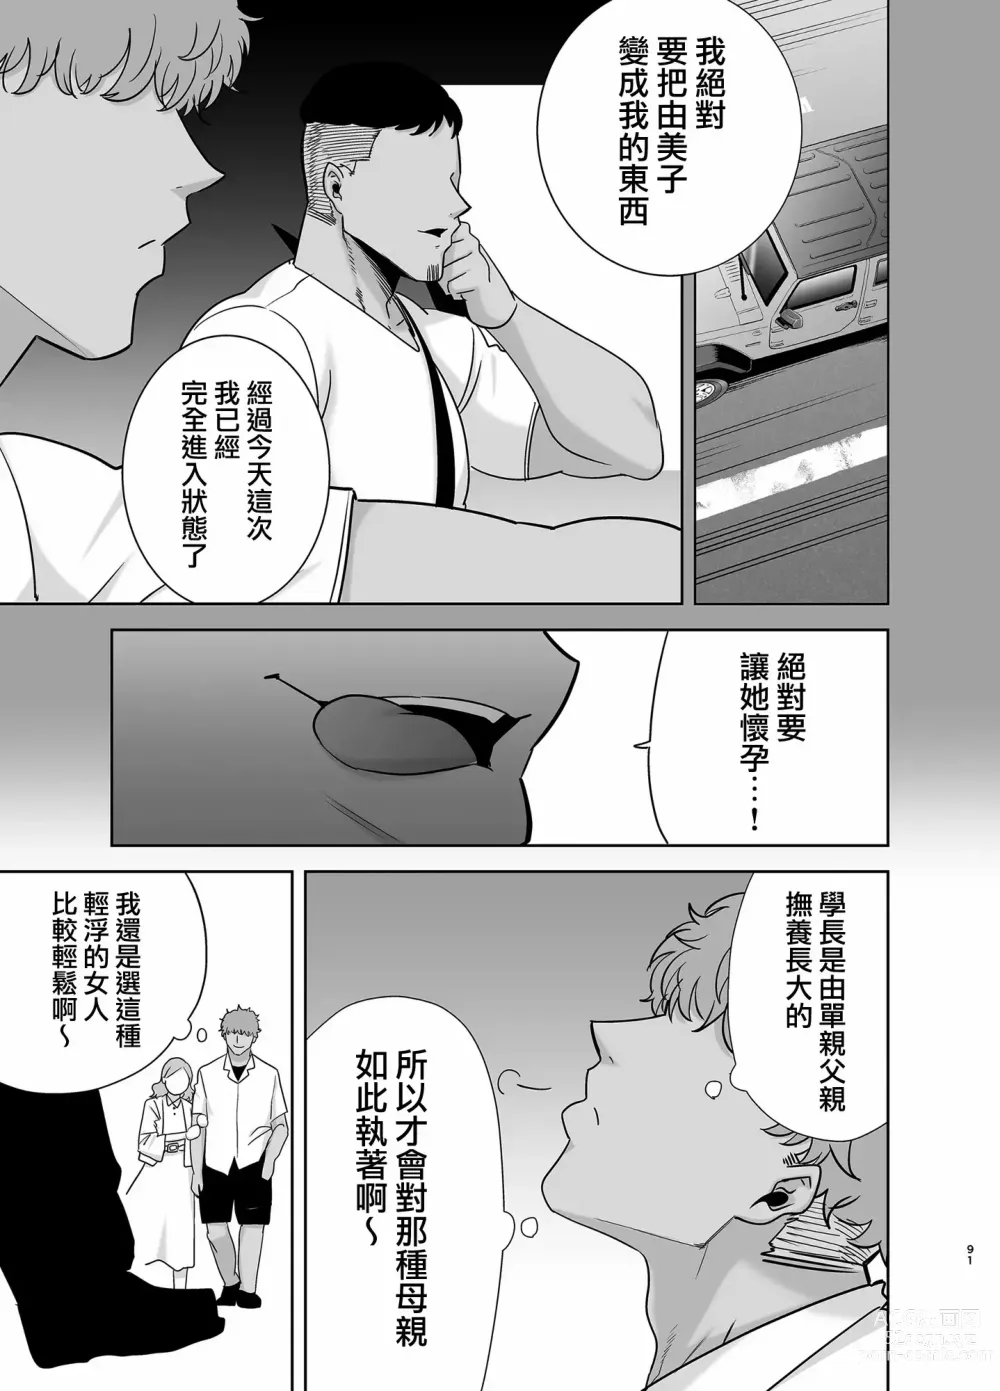 Page 194 of doujinshi 夏天的妻子 1+2